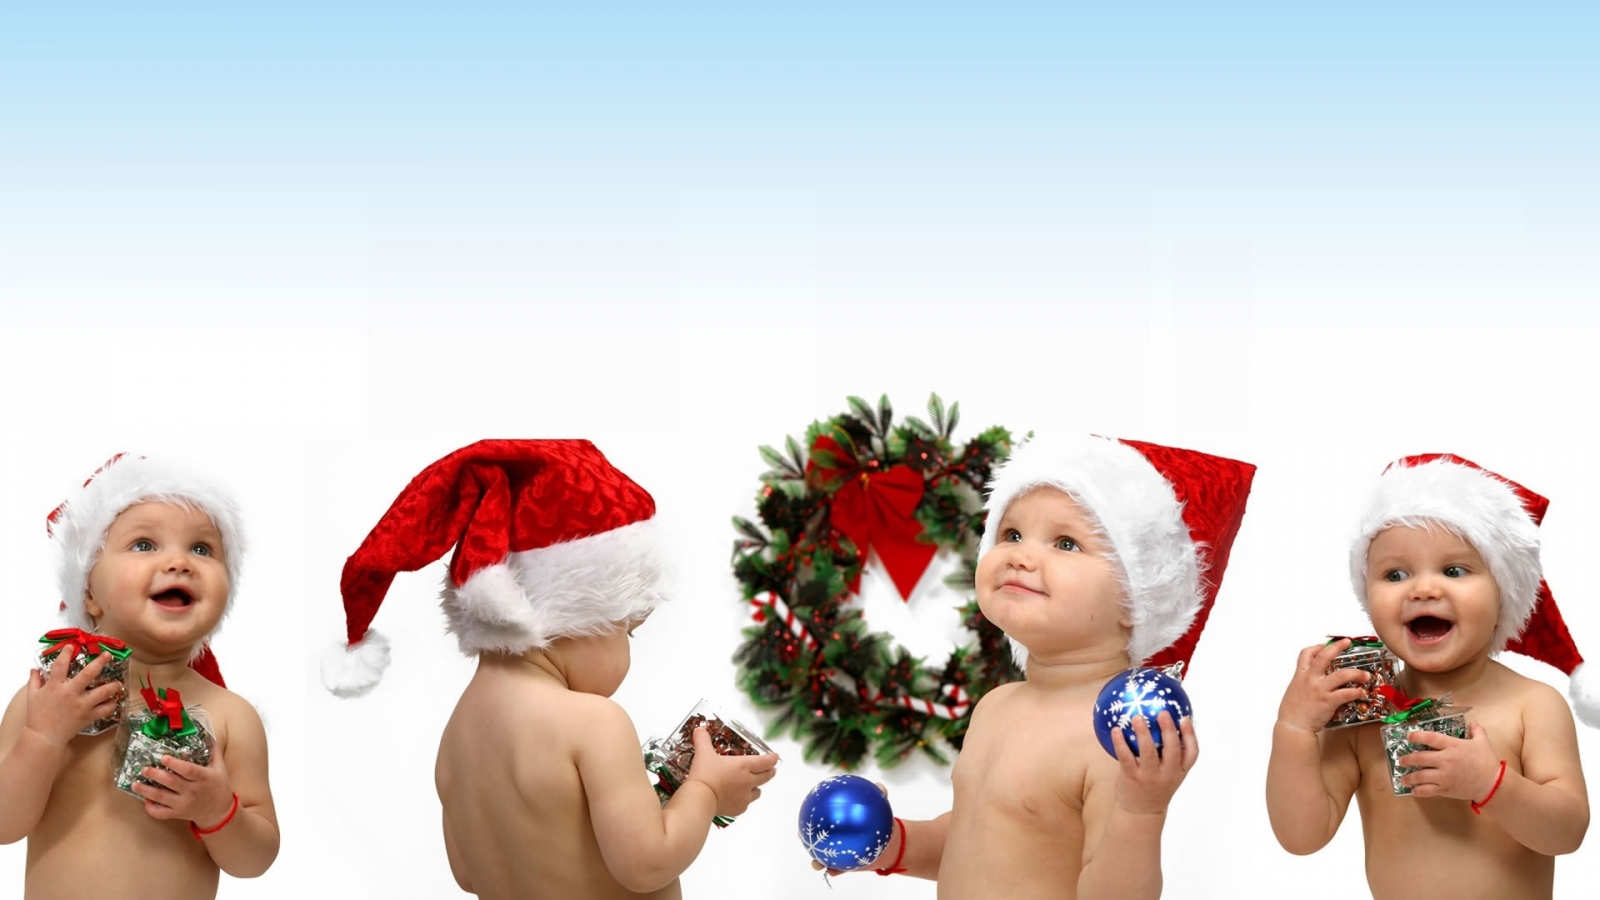 Christmas children for 1600 x 900 HDTV resolution